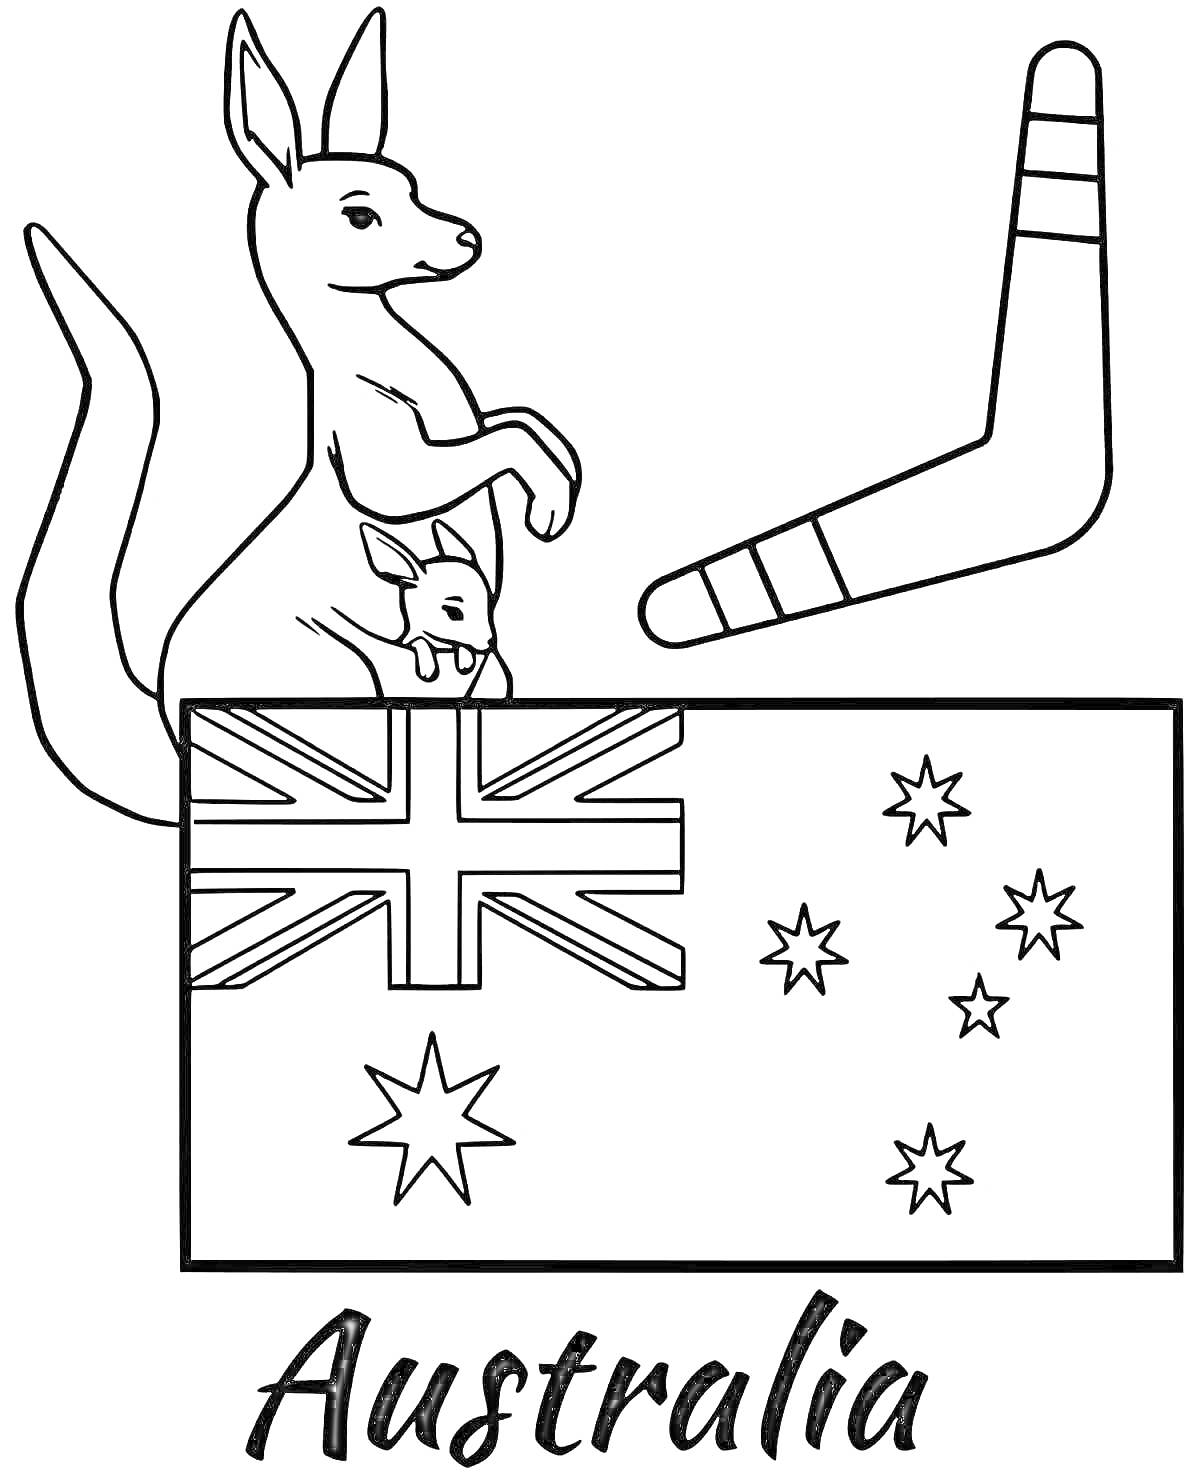 Раскраска Герб Австралии с кенгуру, детёнышем кенгуру, бумерангом и флагом Австралии